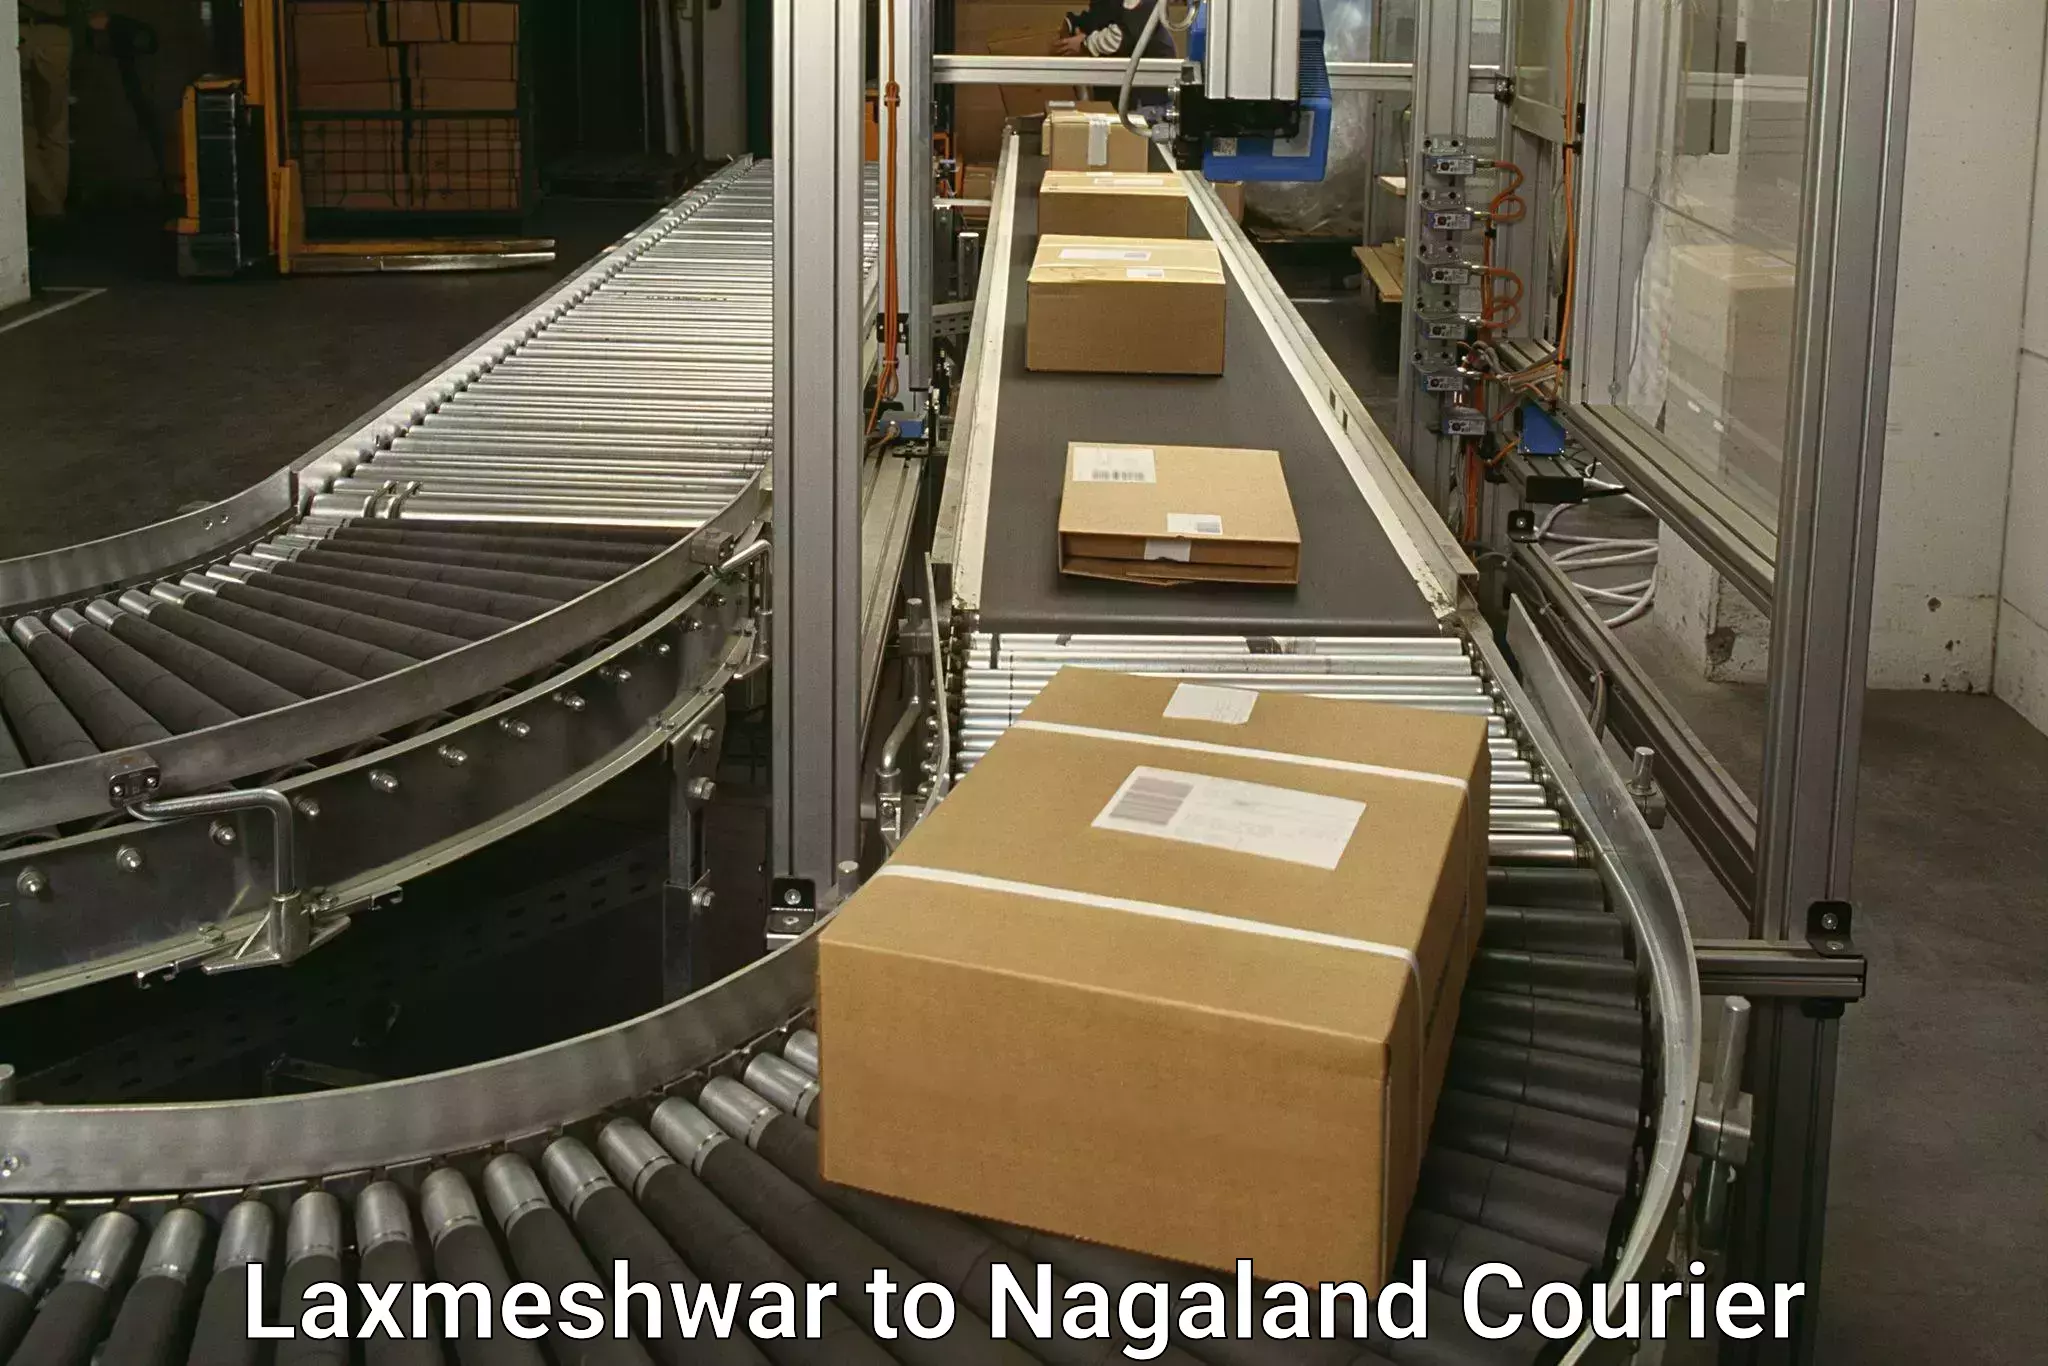 Global shipping networks Laxmeshwar to Nagaland